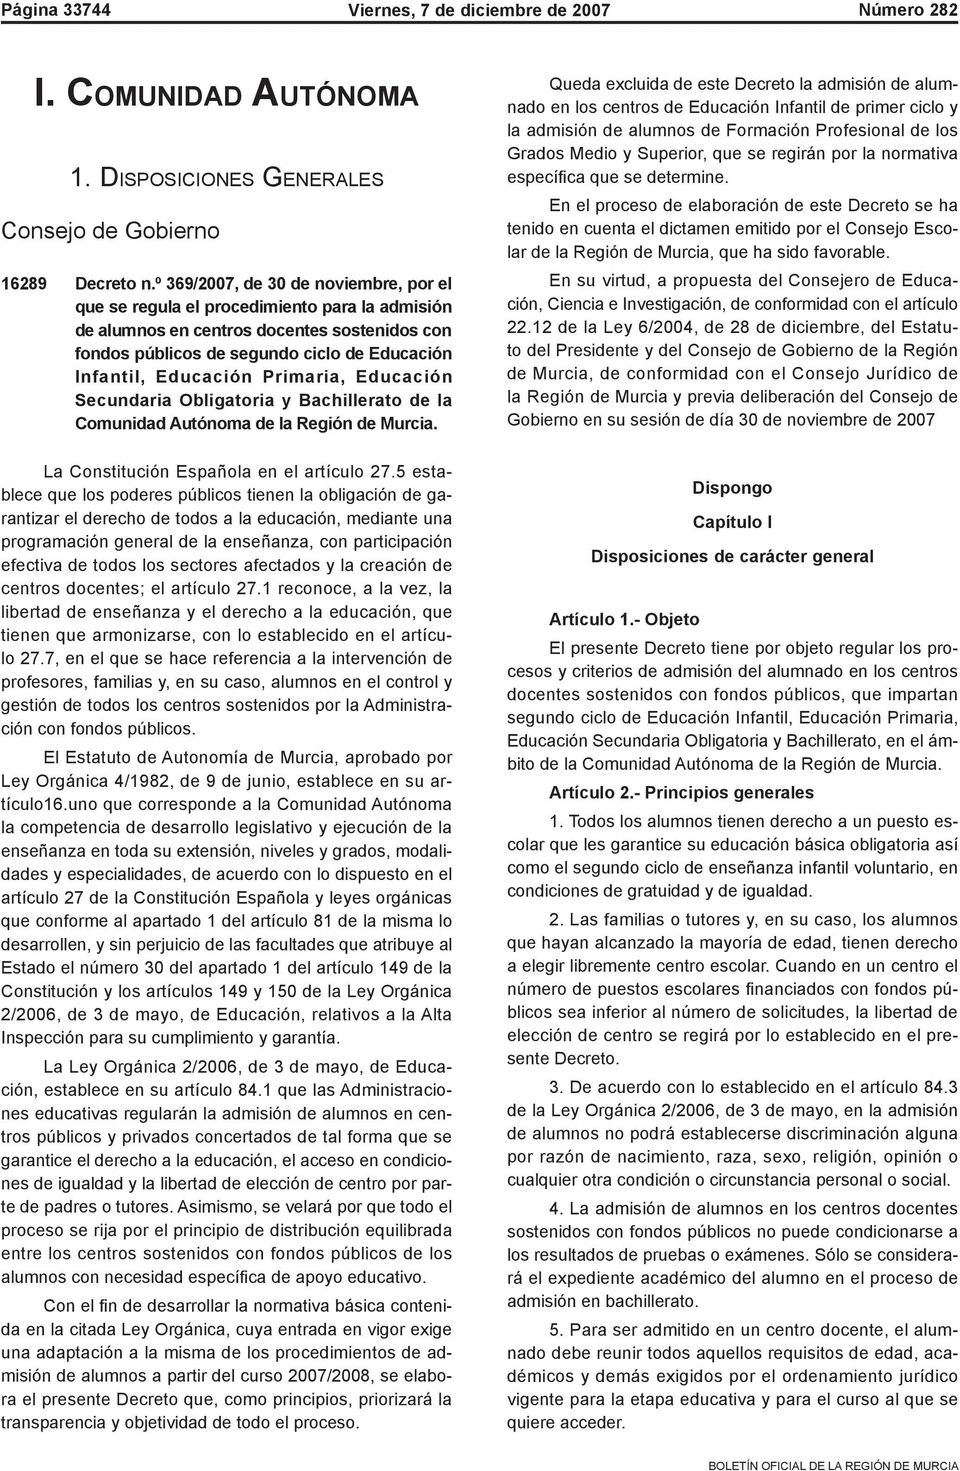 Primaria, Educación Secundaria Obligatoria y Bachillerato de la Comunidad Autónoma de la Región de Murcia. La Constitución Española en el artículo 27.